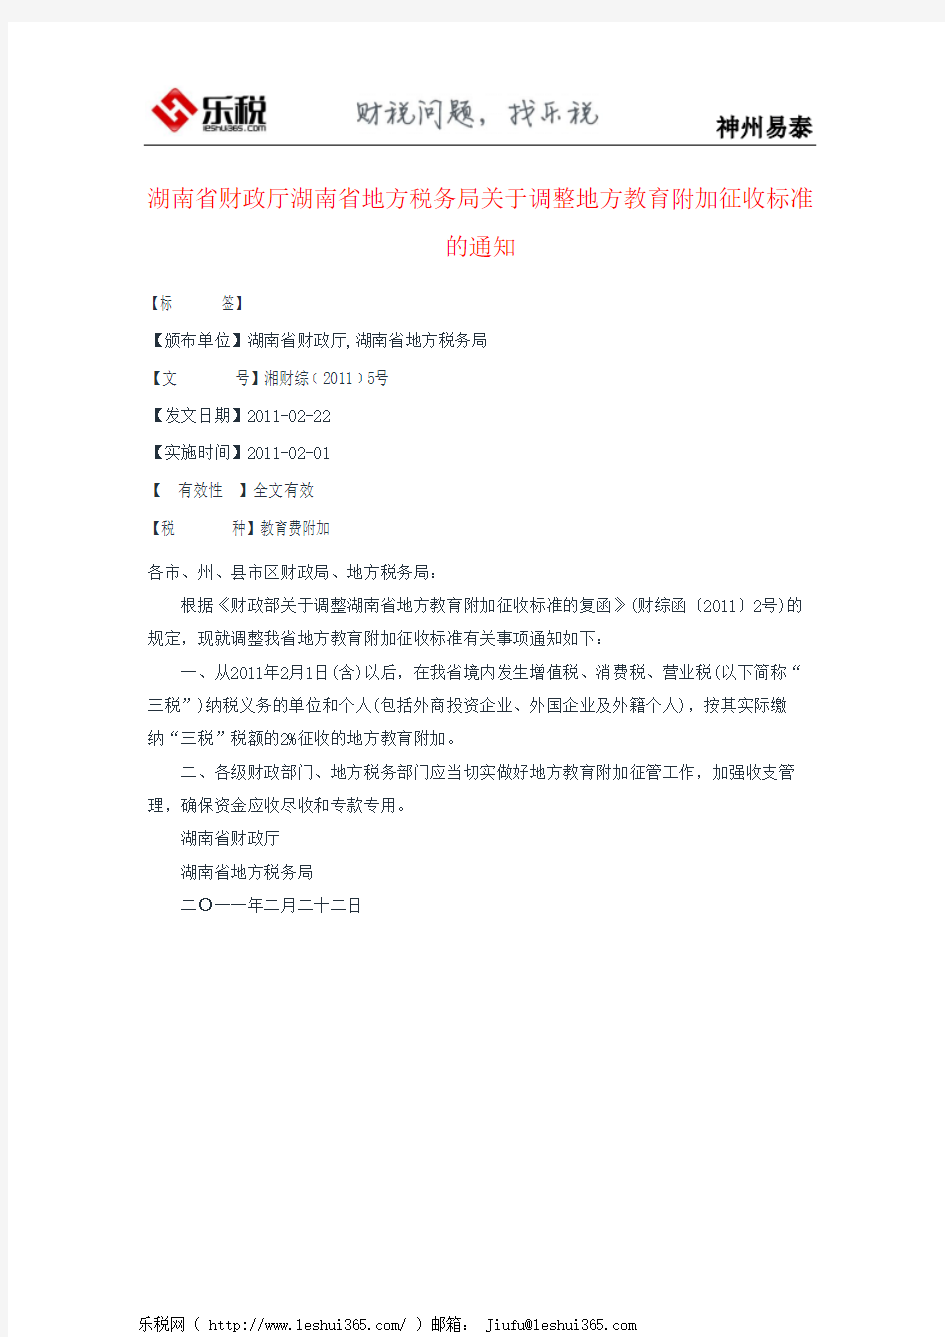 湖南省财政厅湖南省地方税务局关于调整地方教育附加征收标准的通知